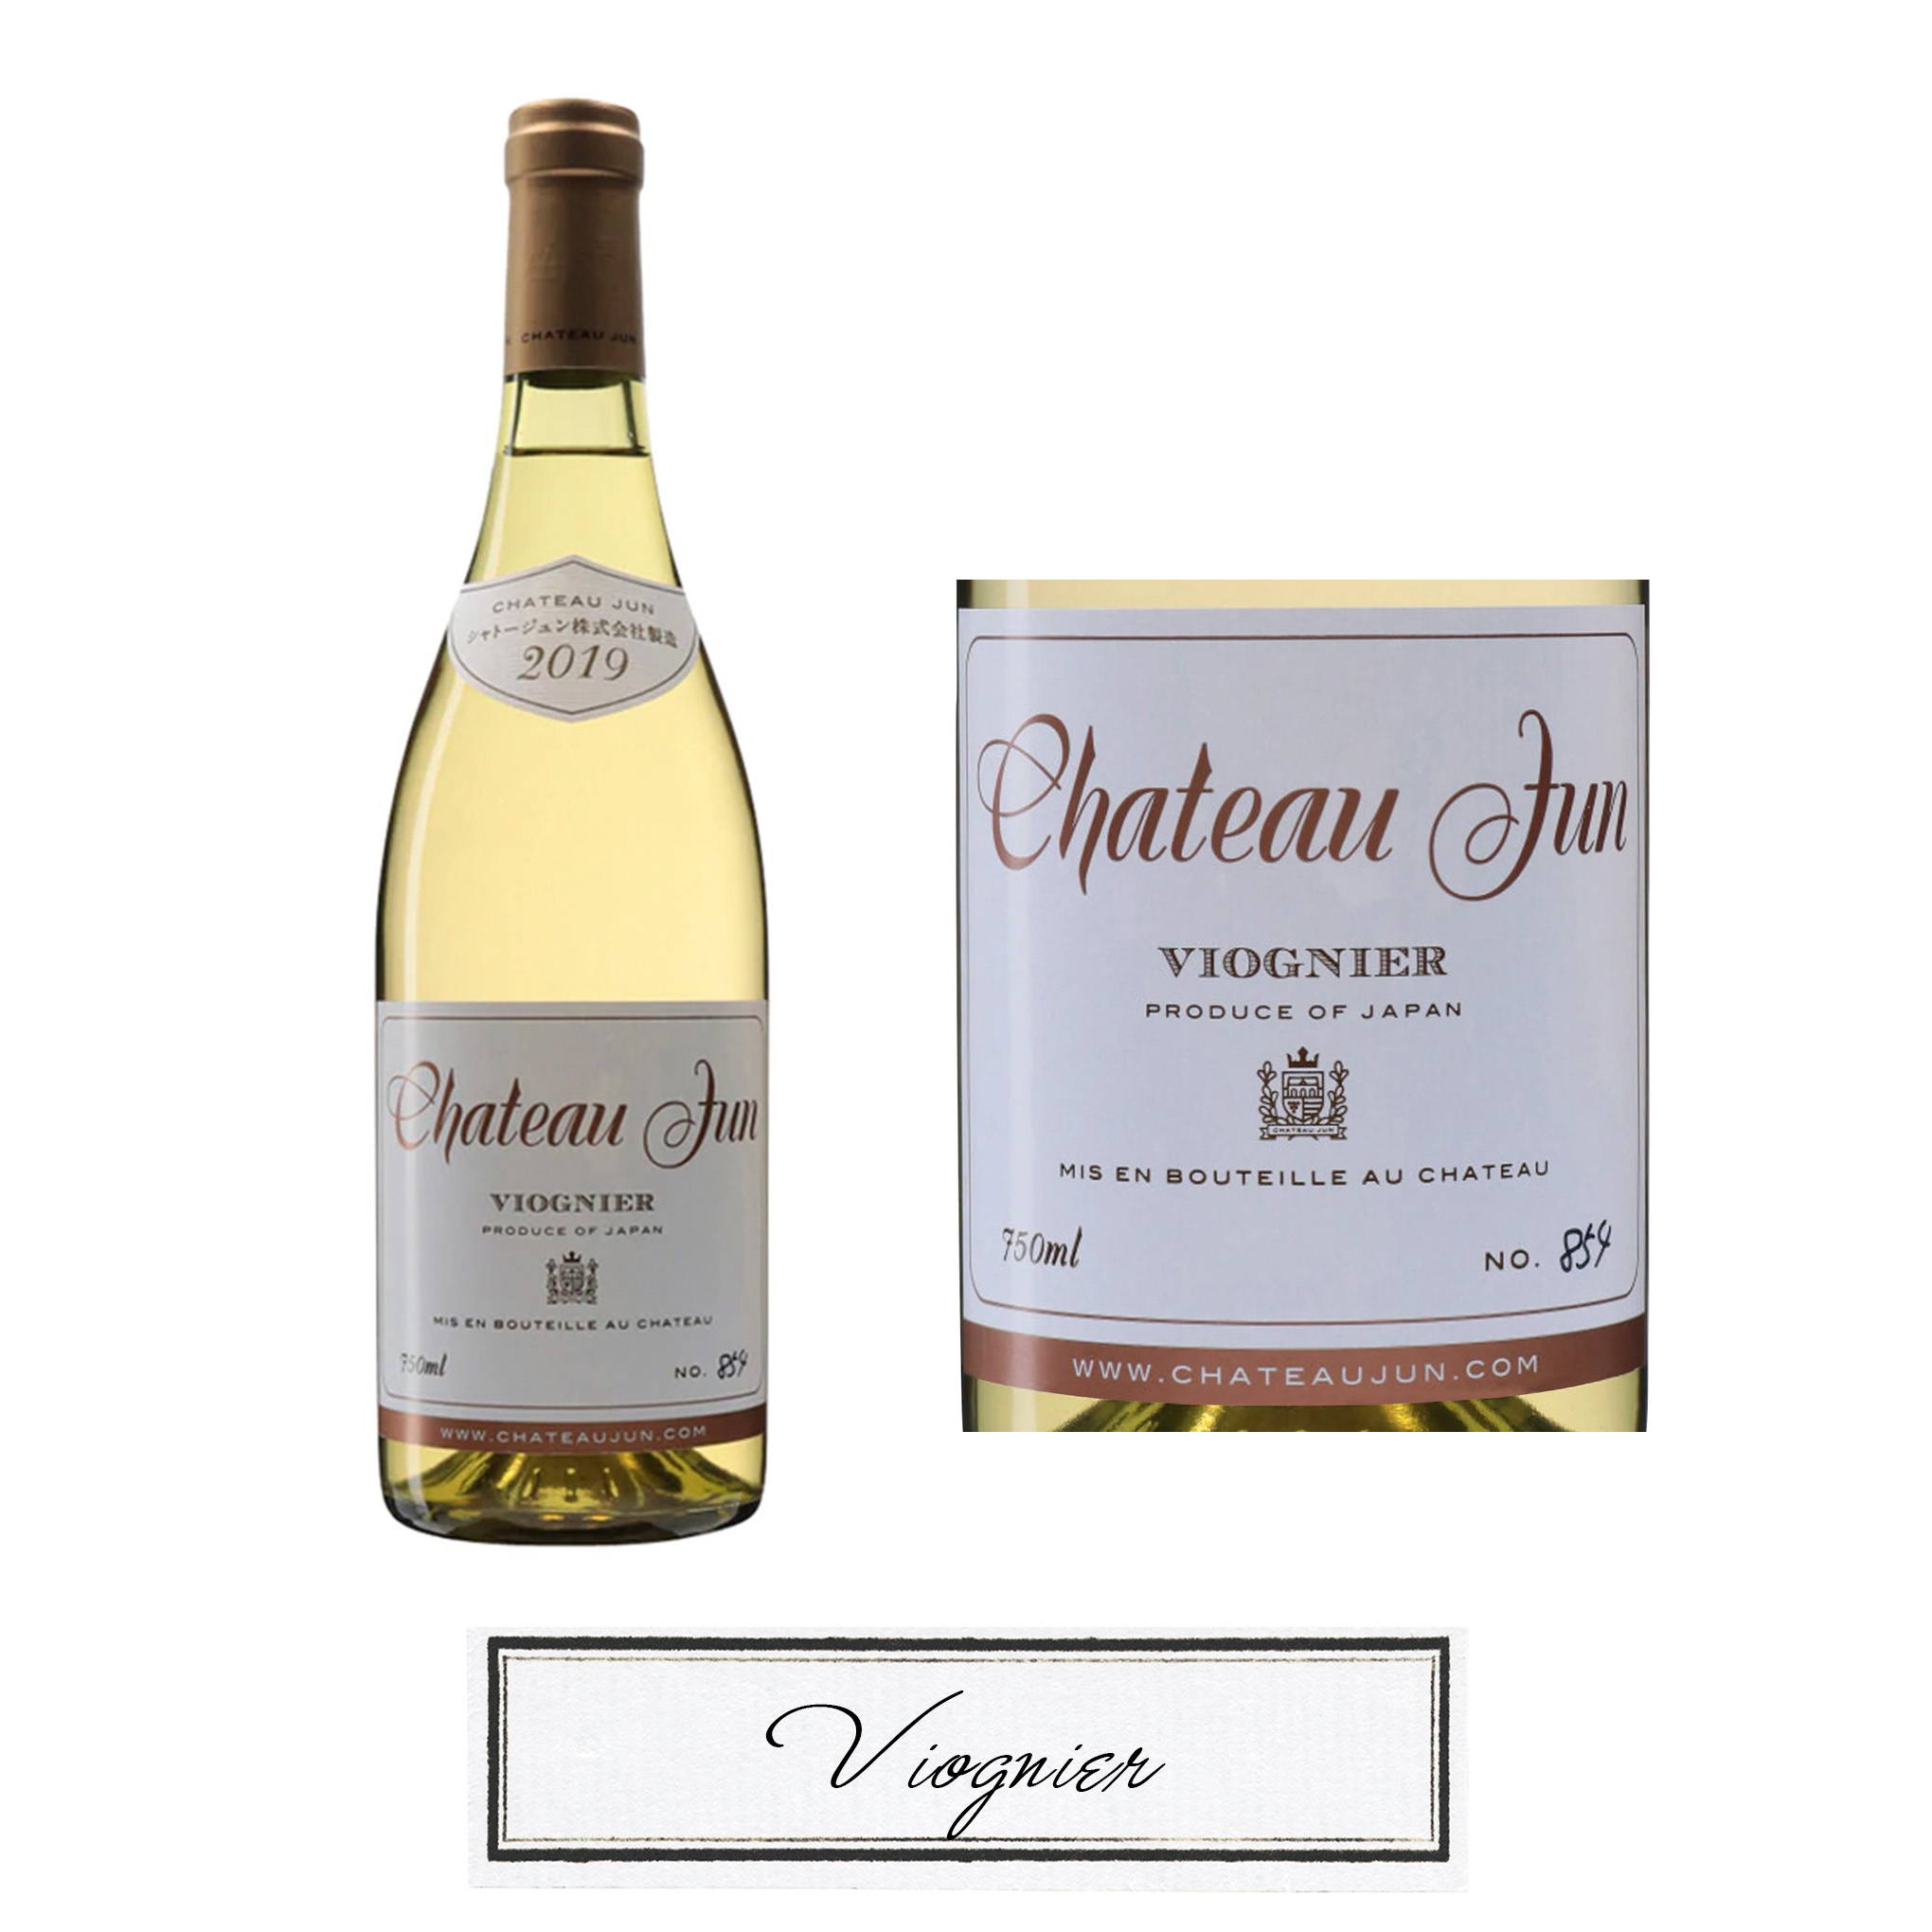 フランス・ローヌ地方が原産の希少な「ヴィオニエ」の白ワイン『シャトージュン/ヴィオニエ 2019』。